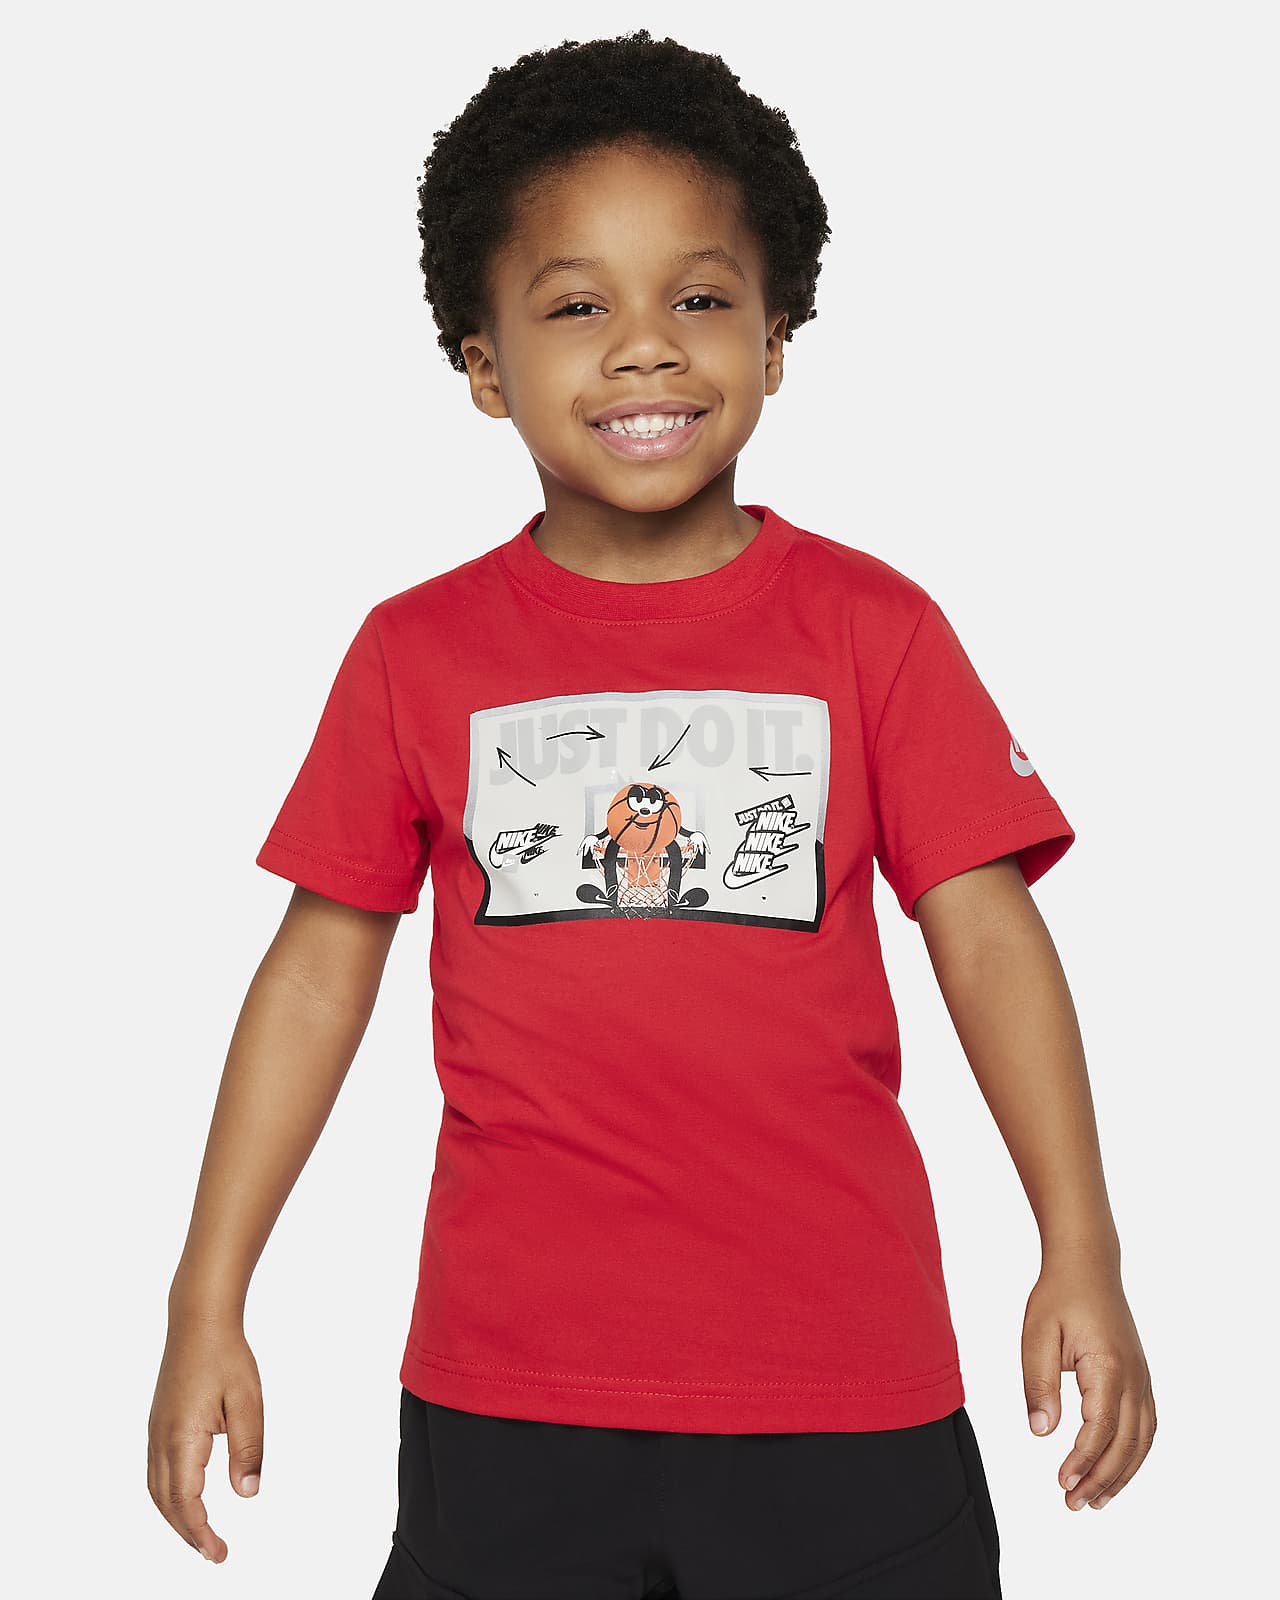 Nike Little Kids' Bball Just Do It T-Shirt